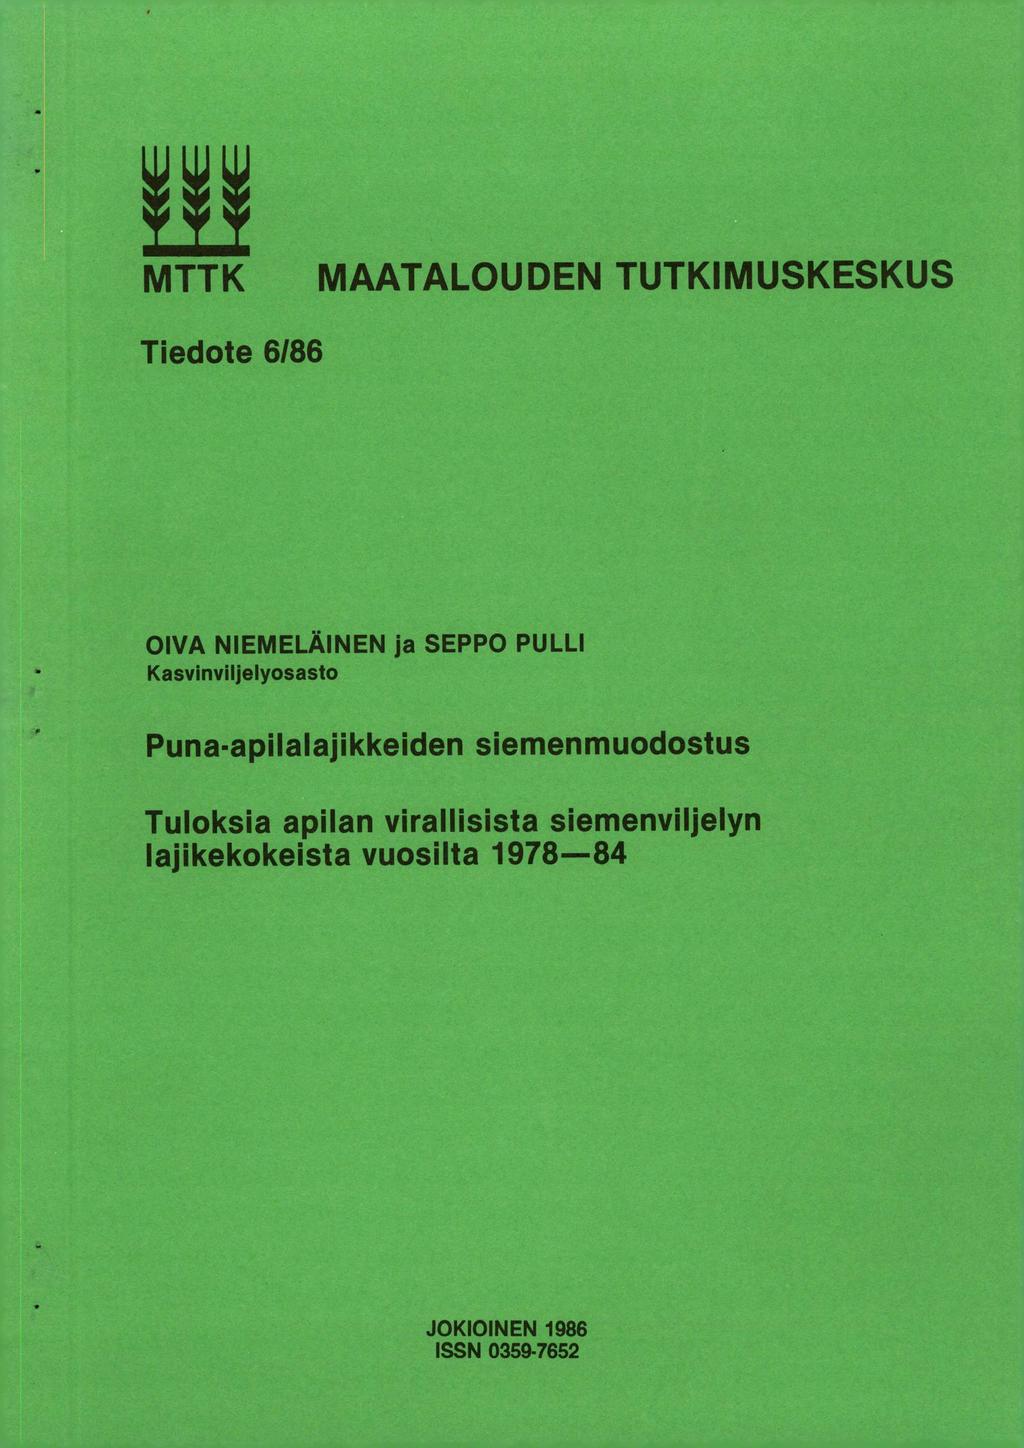 MTTK MAATALOUDEN TUTKIMUSKESKUS Tiedote 6/86 OIVA NIEMELÄINEN ja SEPPO PULLI - Kasvinviljelyosasto Puna-apilalajikkeiden